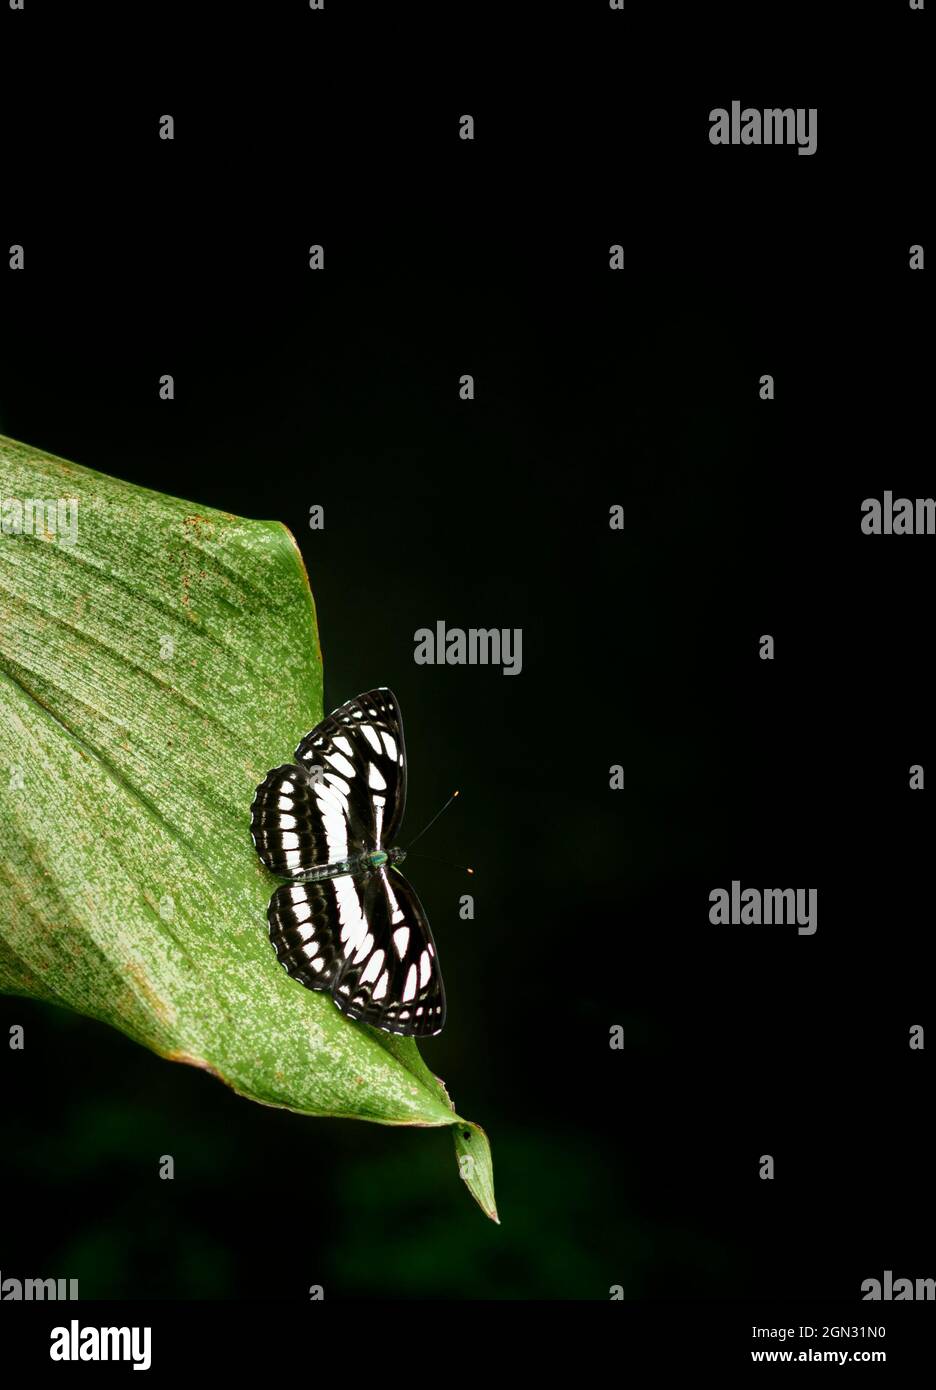 Der wunderschöne Ceylon Tiger Schmetterling liegt am Rand eines grünen Blattes, natürliche dunkle Umgebung mit gedämpfter Beleuchtung, dunkler Hintergrund mit Kopierräumen. Stockfoto